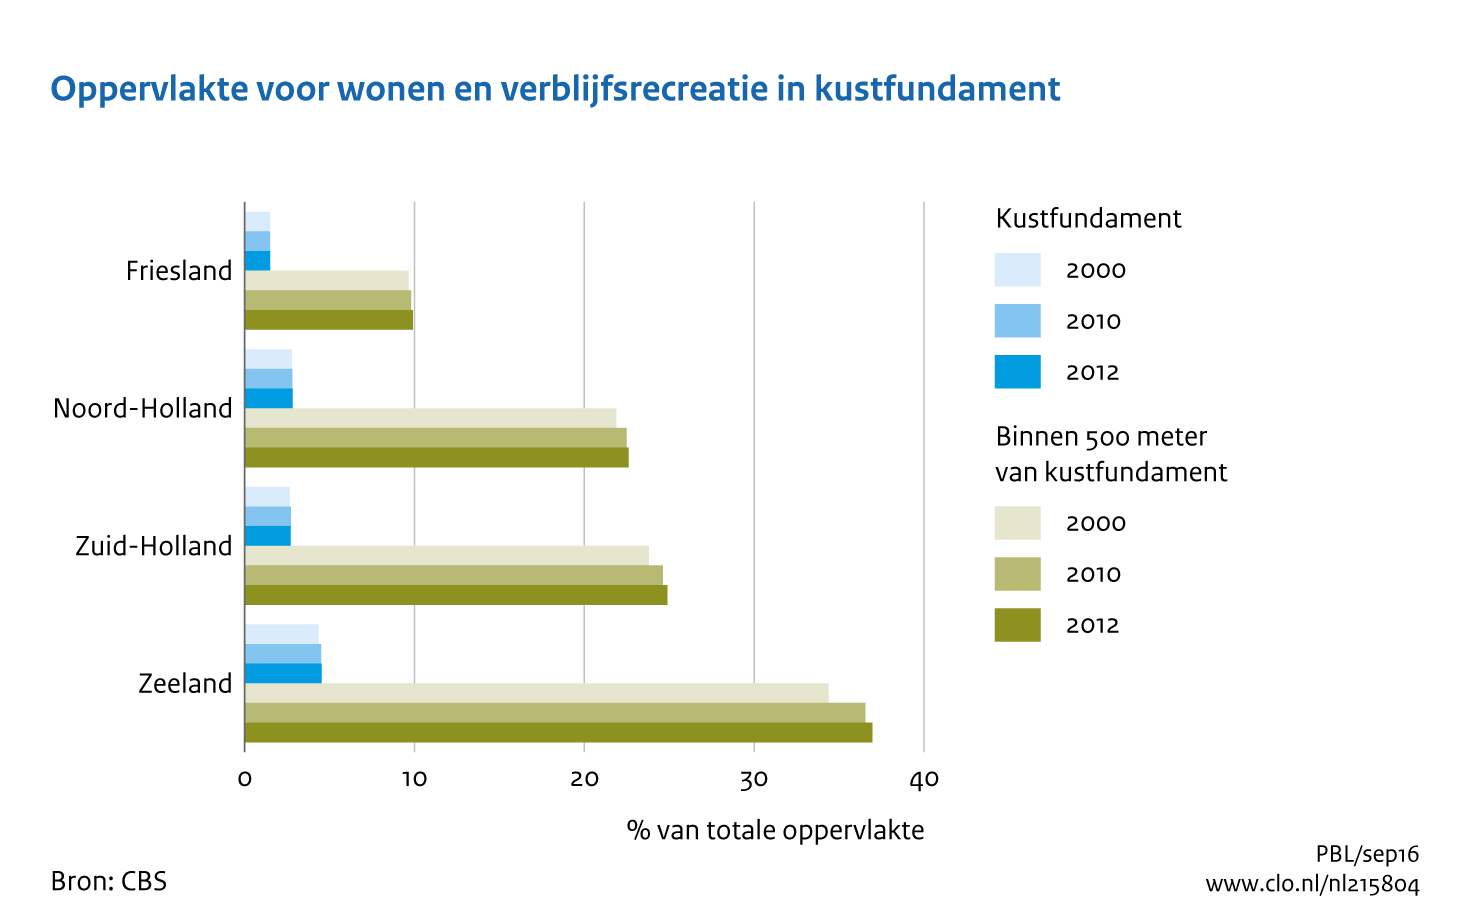 Figuur Oppervlakte wonen en verblijfsrecreatie in 2000-2012. In de rest van de tekst wordt deze figuur uitgebreider uitgelegd.